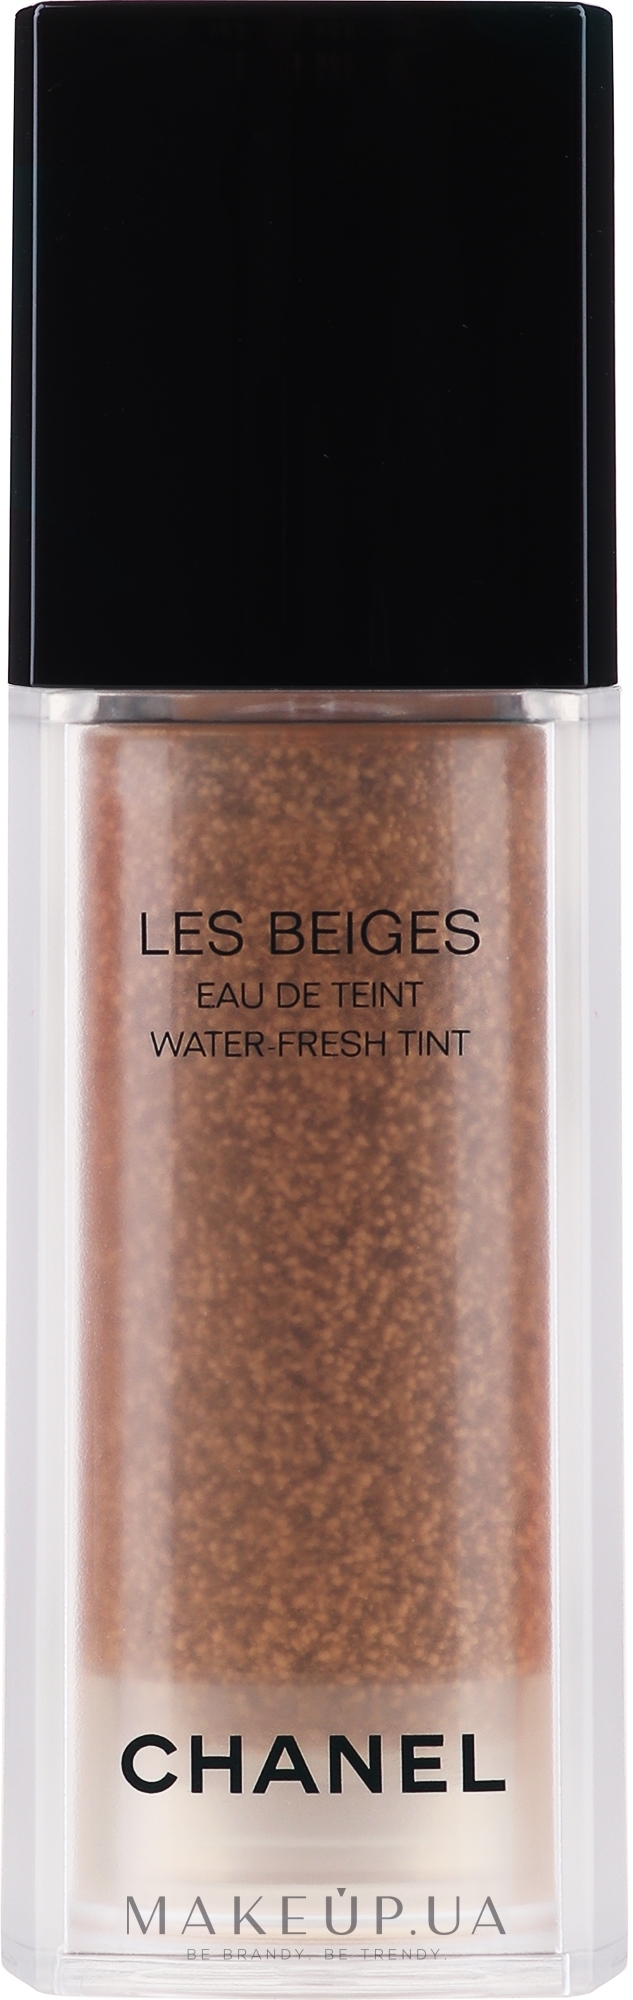 Освежающий флюид-тинт, 15 мл - Chanel Les Beiges Eau De Teint Water-fresh Tint — фото Medium